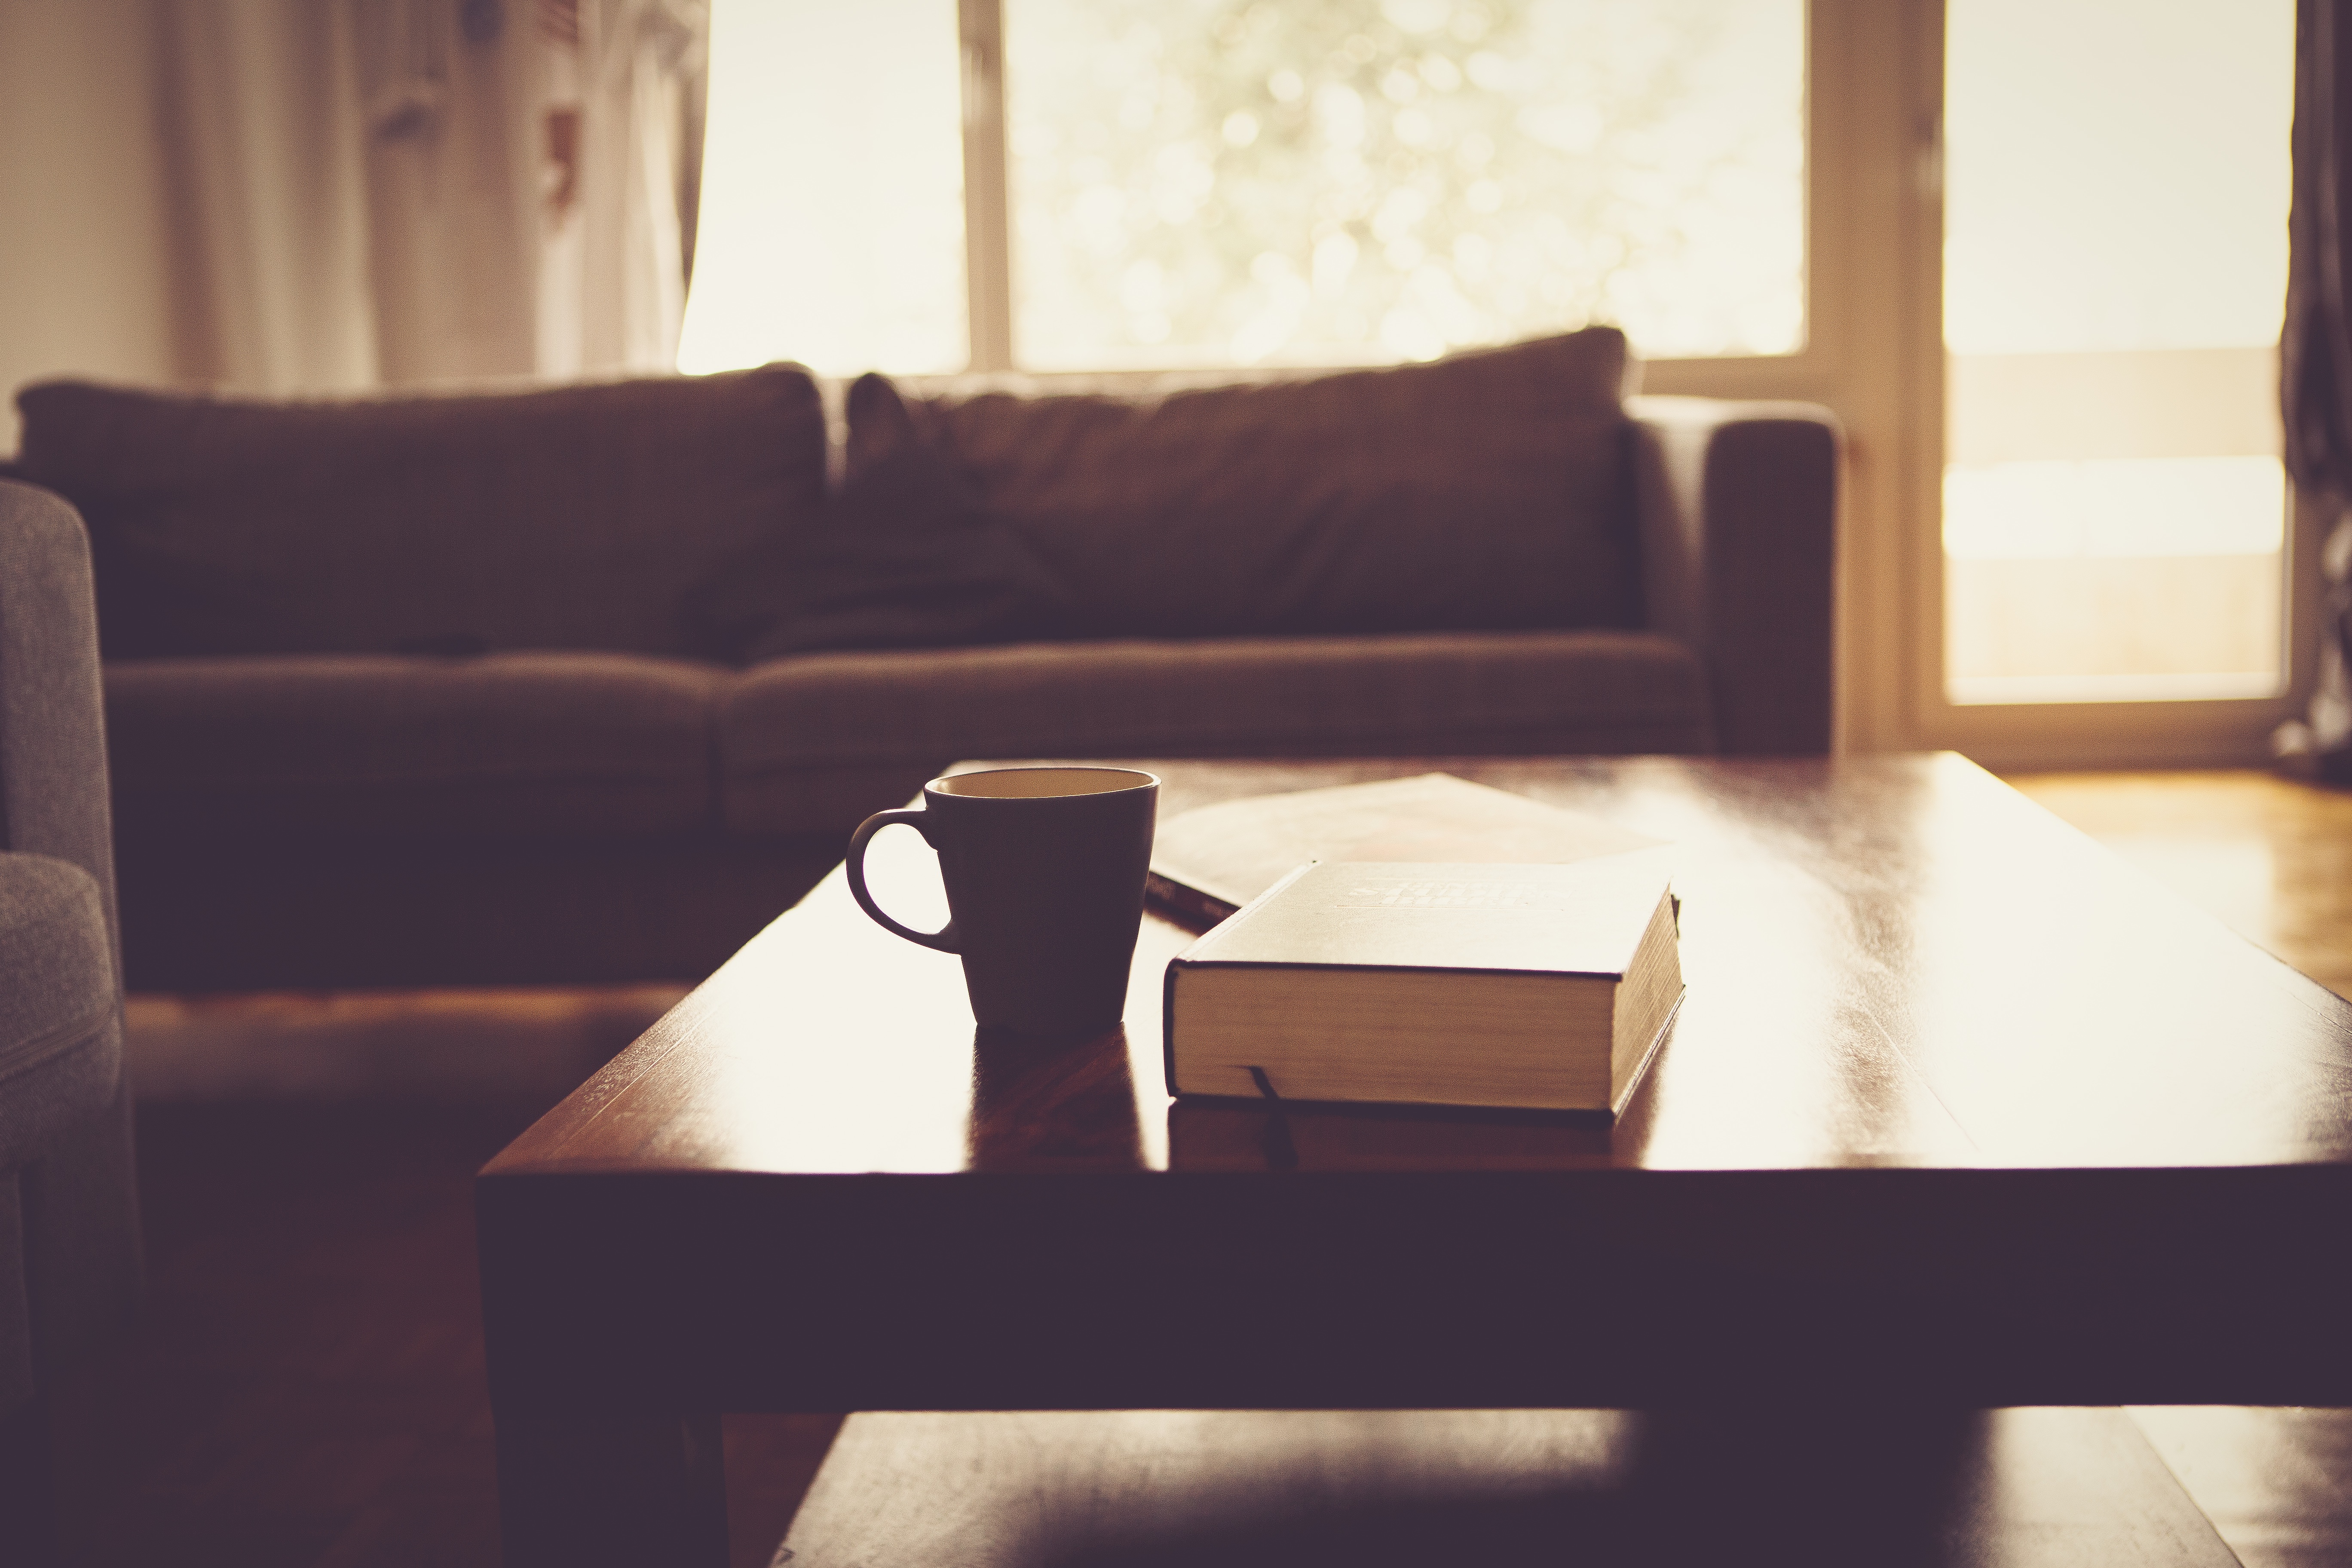 Coffee table with book and mug